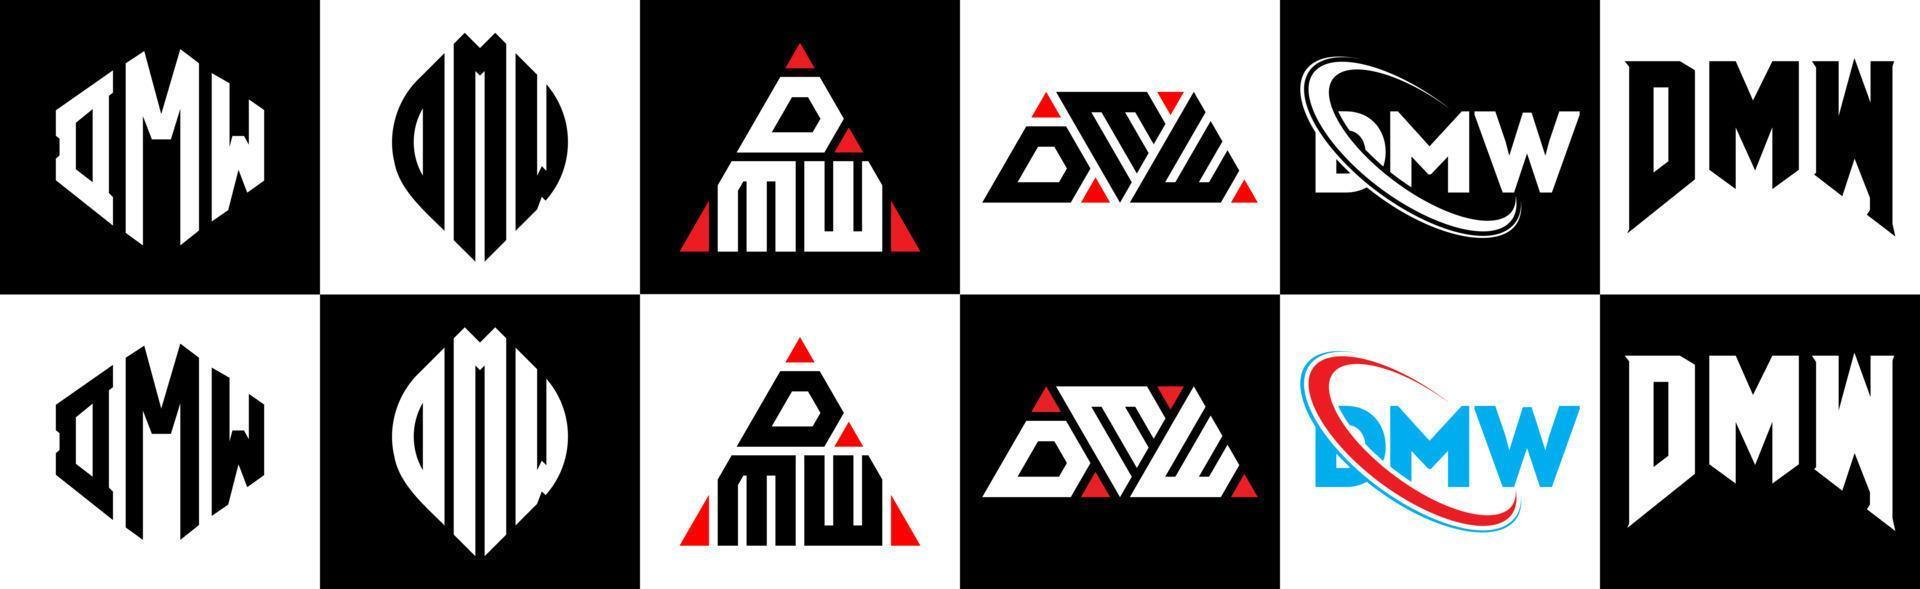 design de logotipo de letra dmw em seis estilo. dmw polígono, círculo, triângulo, hexágono, estilo plano e simples com logotipo de letra de variação de cor preto e branco definido em uma prancheta. dmw logotipo minimalista e clássico vetor